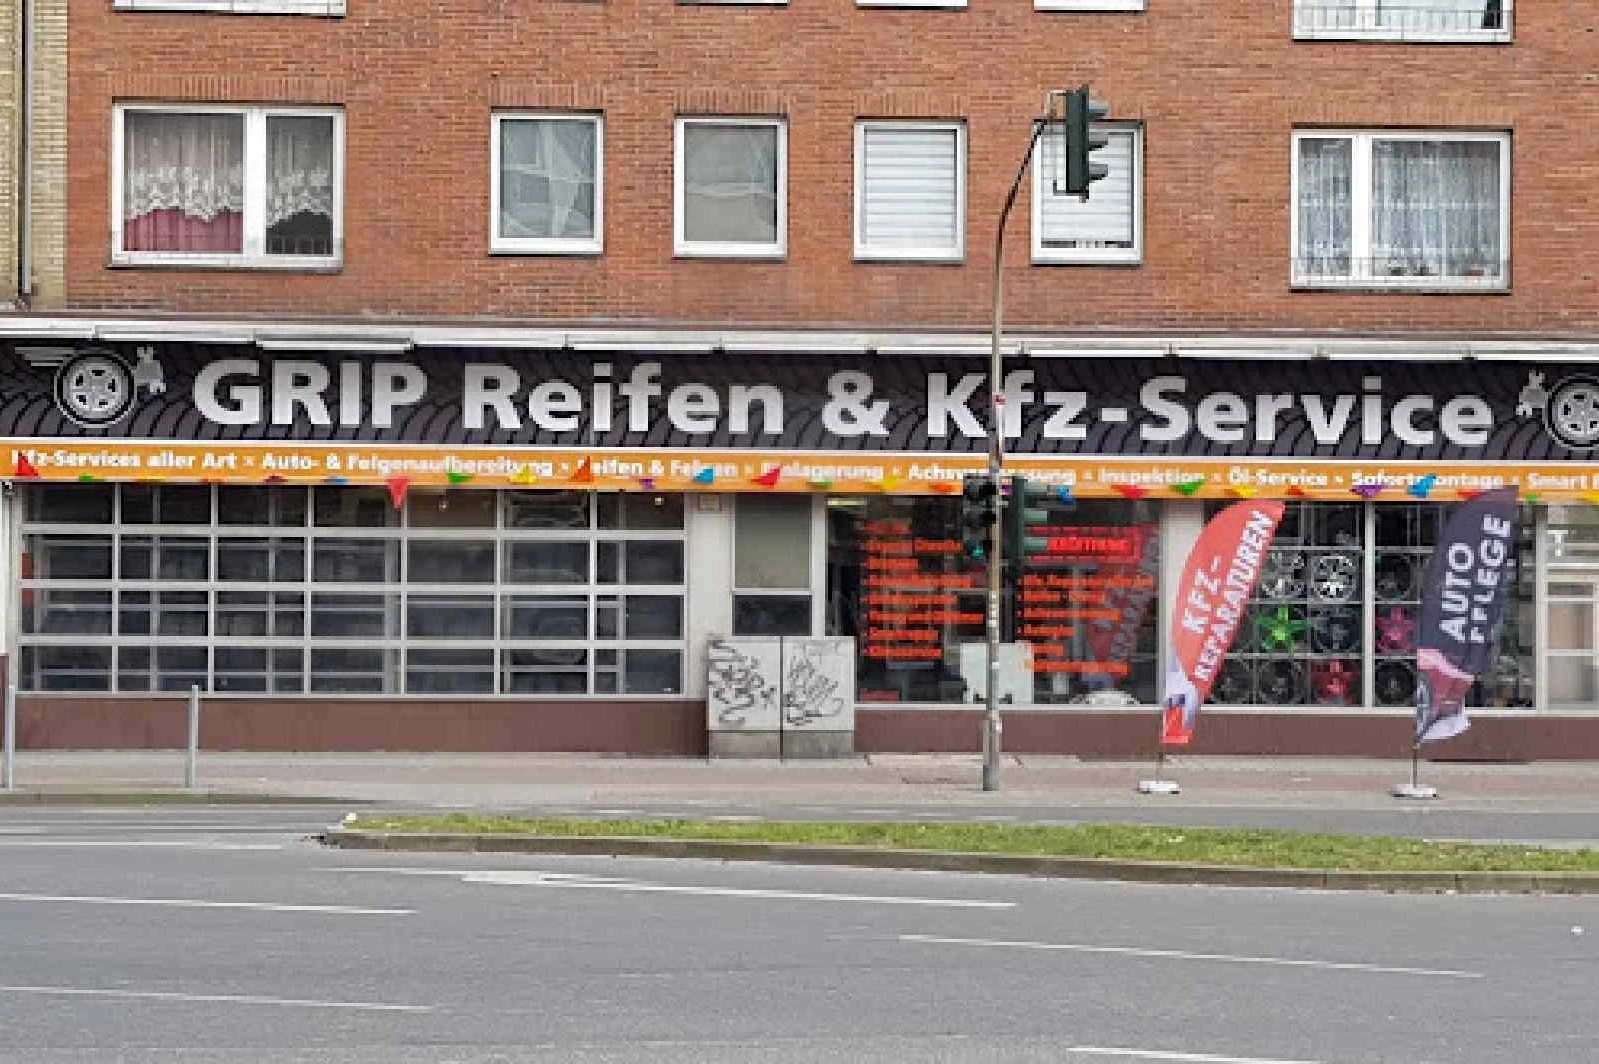 Grip-Reifen & KFZ